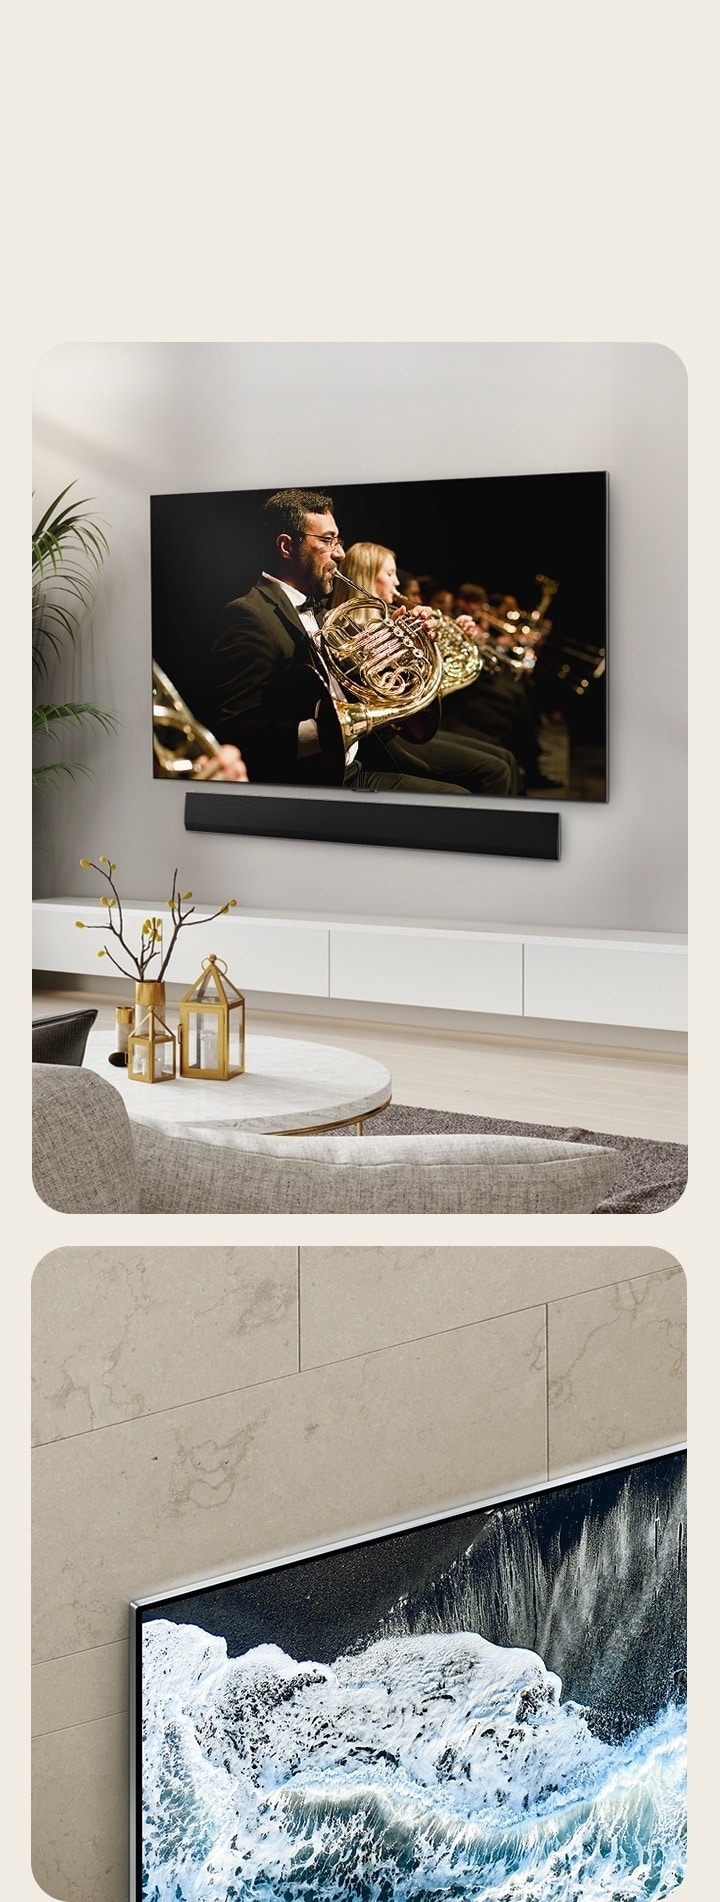 大理石の壁にかけられたLG OLED TV、OLED G4が斜めから映される。壁と一体化することを表現している。  現代的な生活空間の壁にフラットマウントで設置されたLG OLED TV、OLED G4とLGサウンドバー。画面には演奏中のオーケストラが映し出されている。